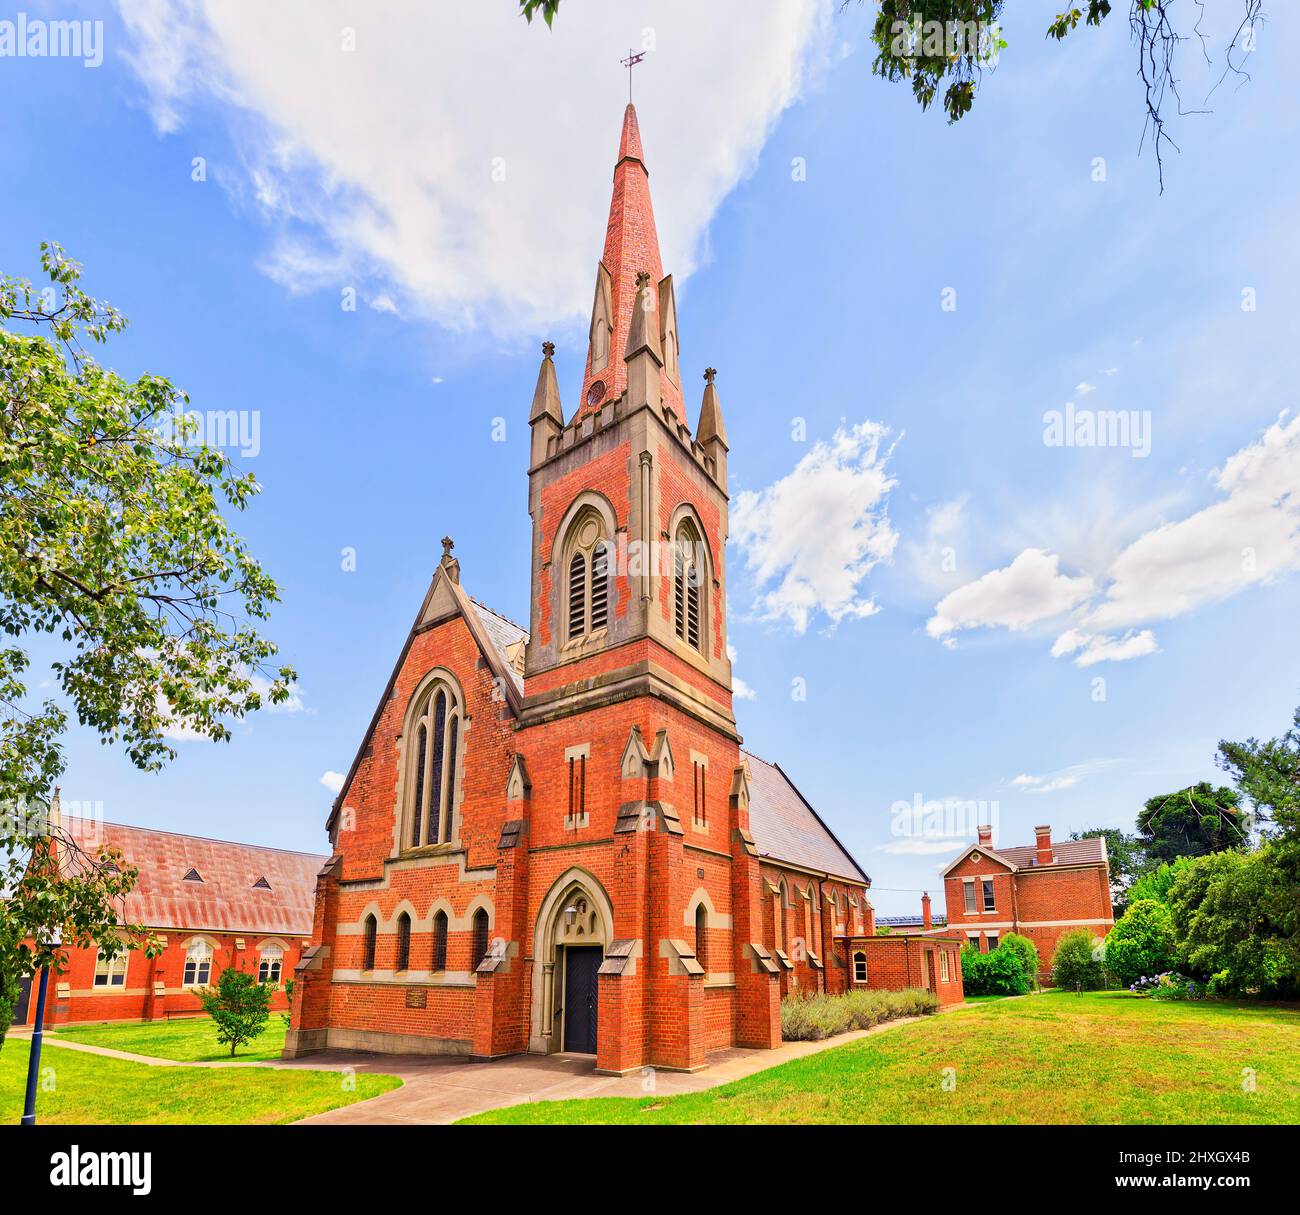 Antica chiesa presbiteriana in stile gotico a Wagga Wagga, città australiana. Foto Stock